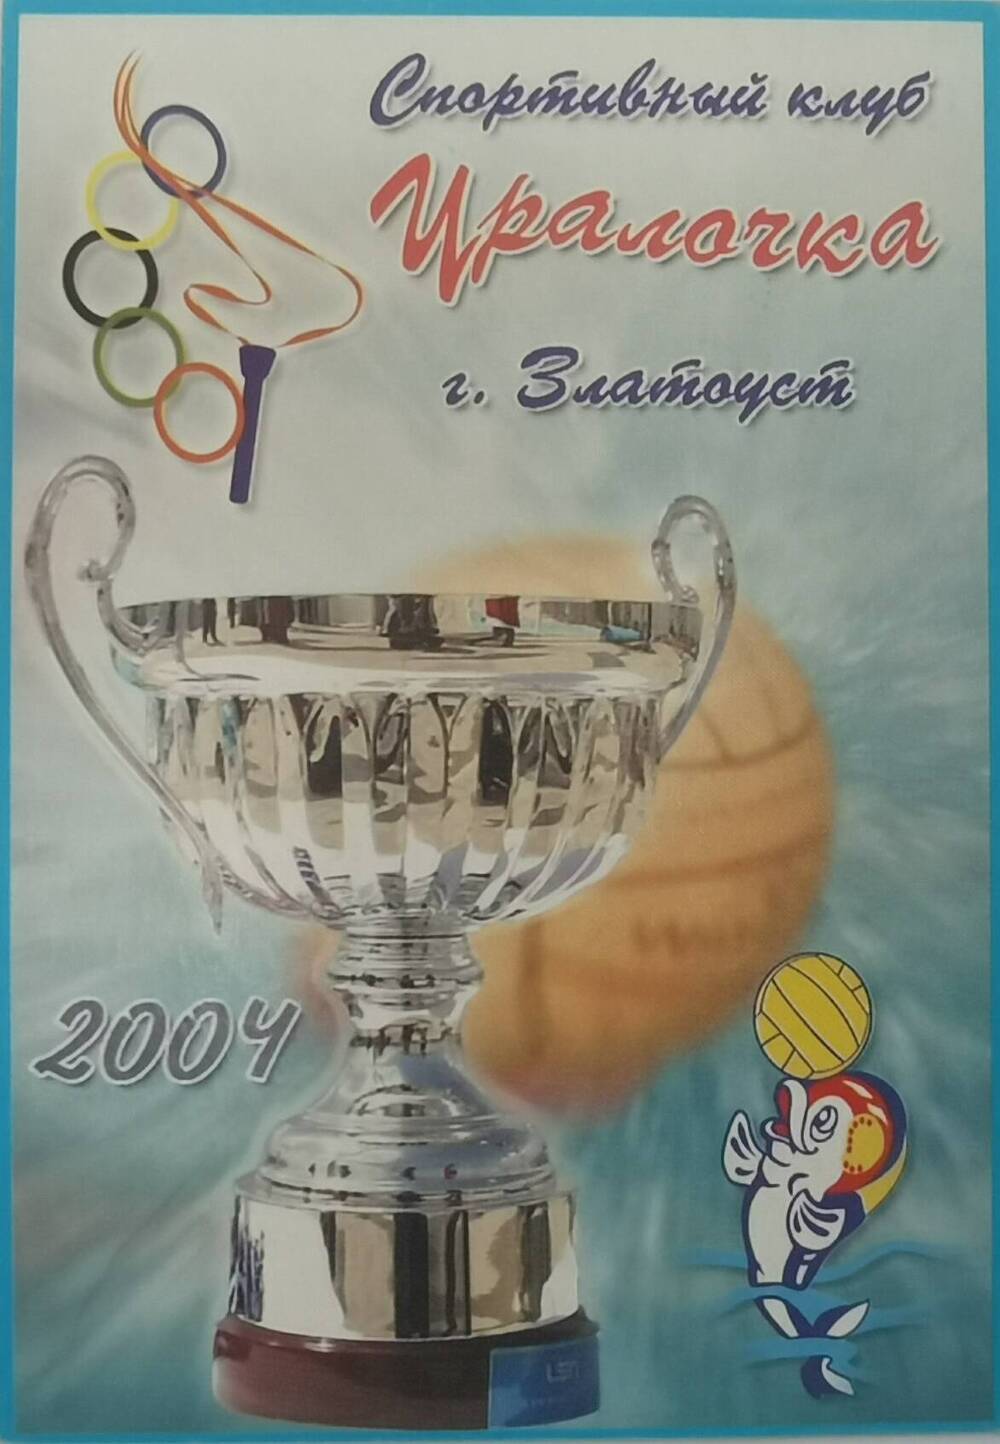 Календарь карманный на 2004 г. Спортивный клуб Уралочка. г. Златоуст, 2003 г.